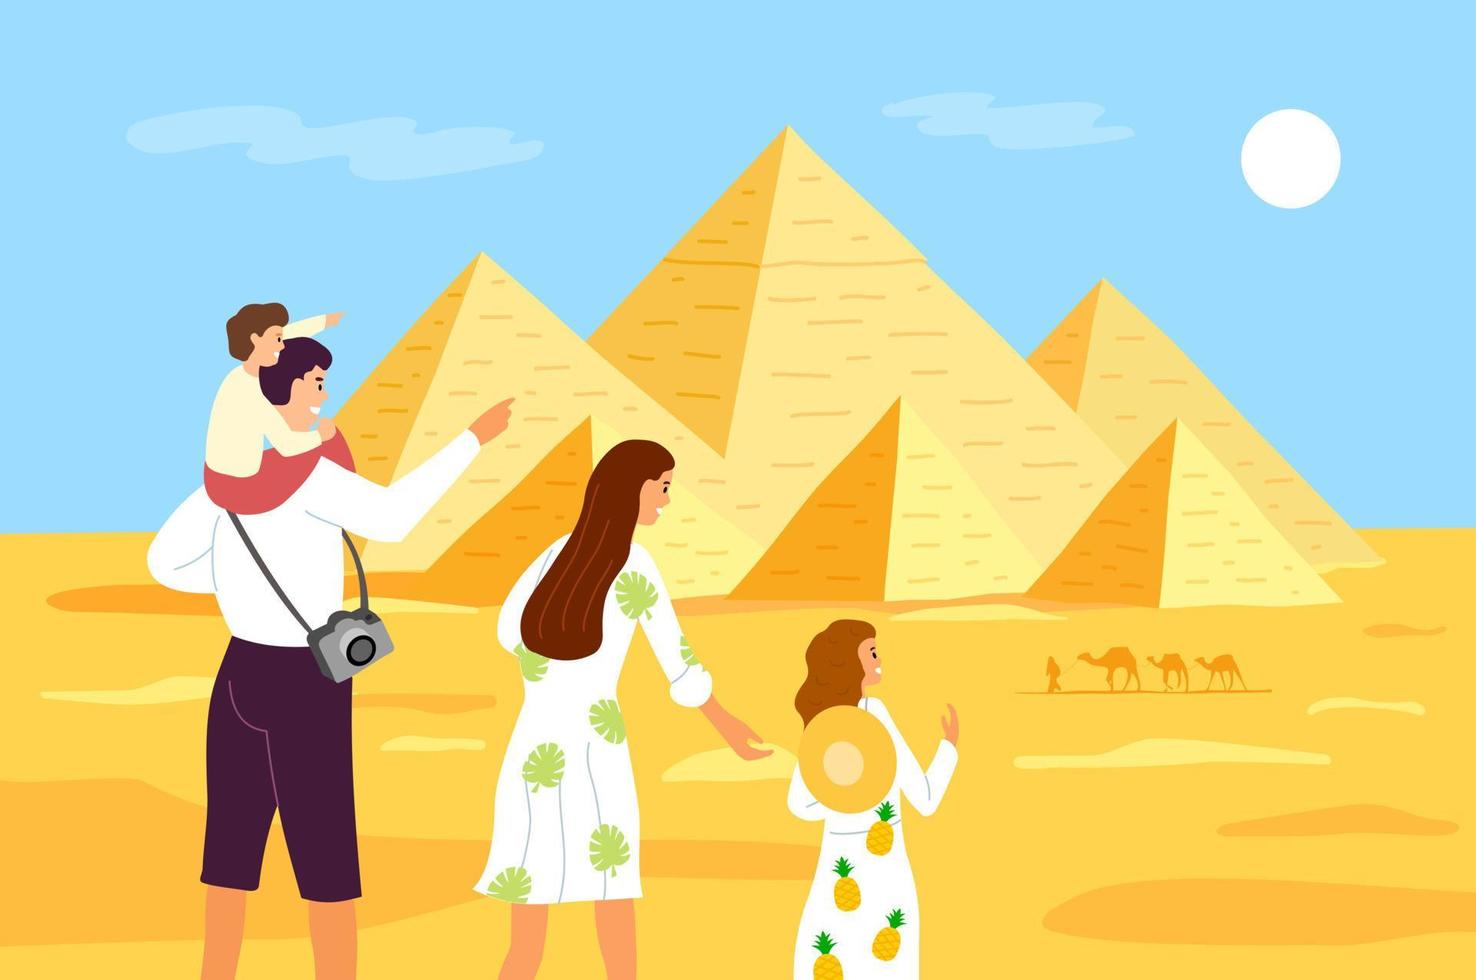 pirámides de egipto. una familia de turistas mira las pirámides egipcias. pirámide de keops en el cairo, giza. estructuras de piedra egipcias. ilustración vectorial vector